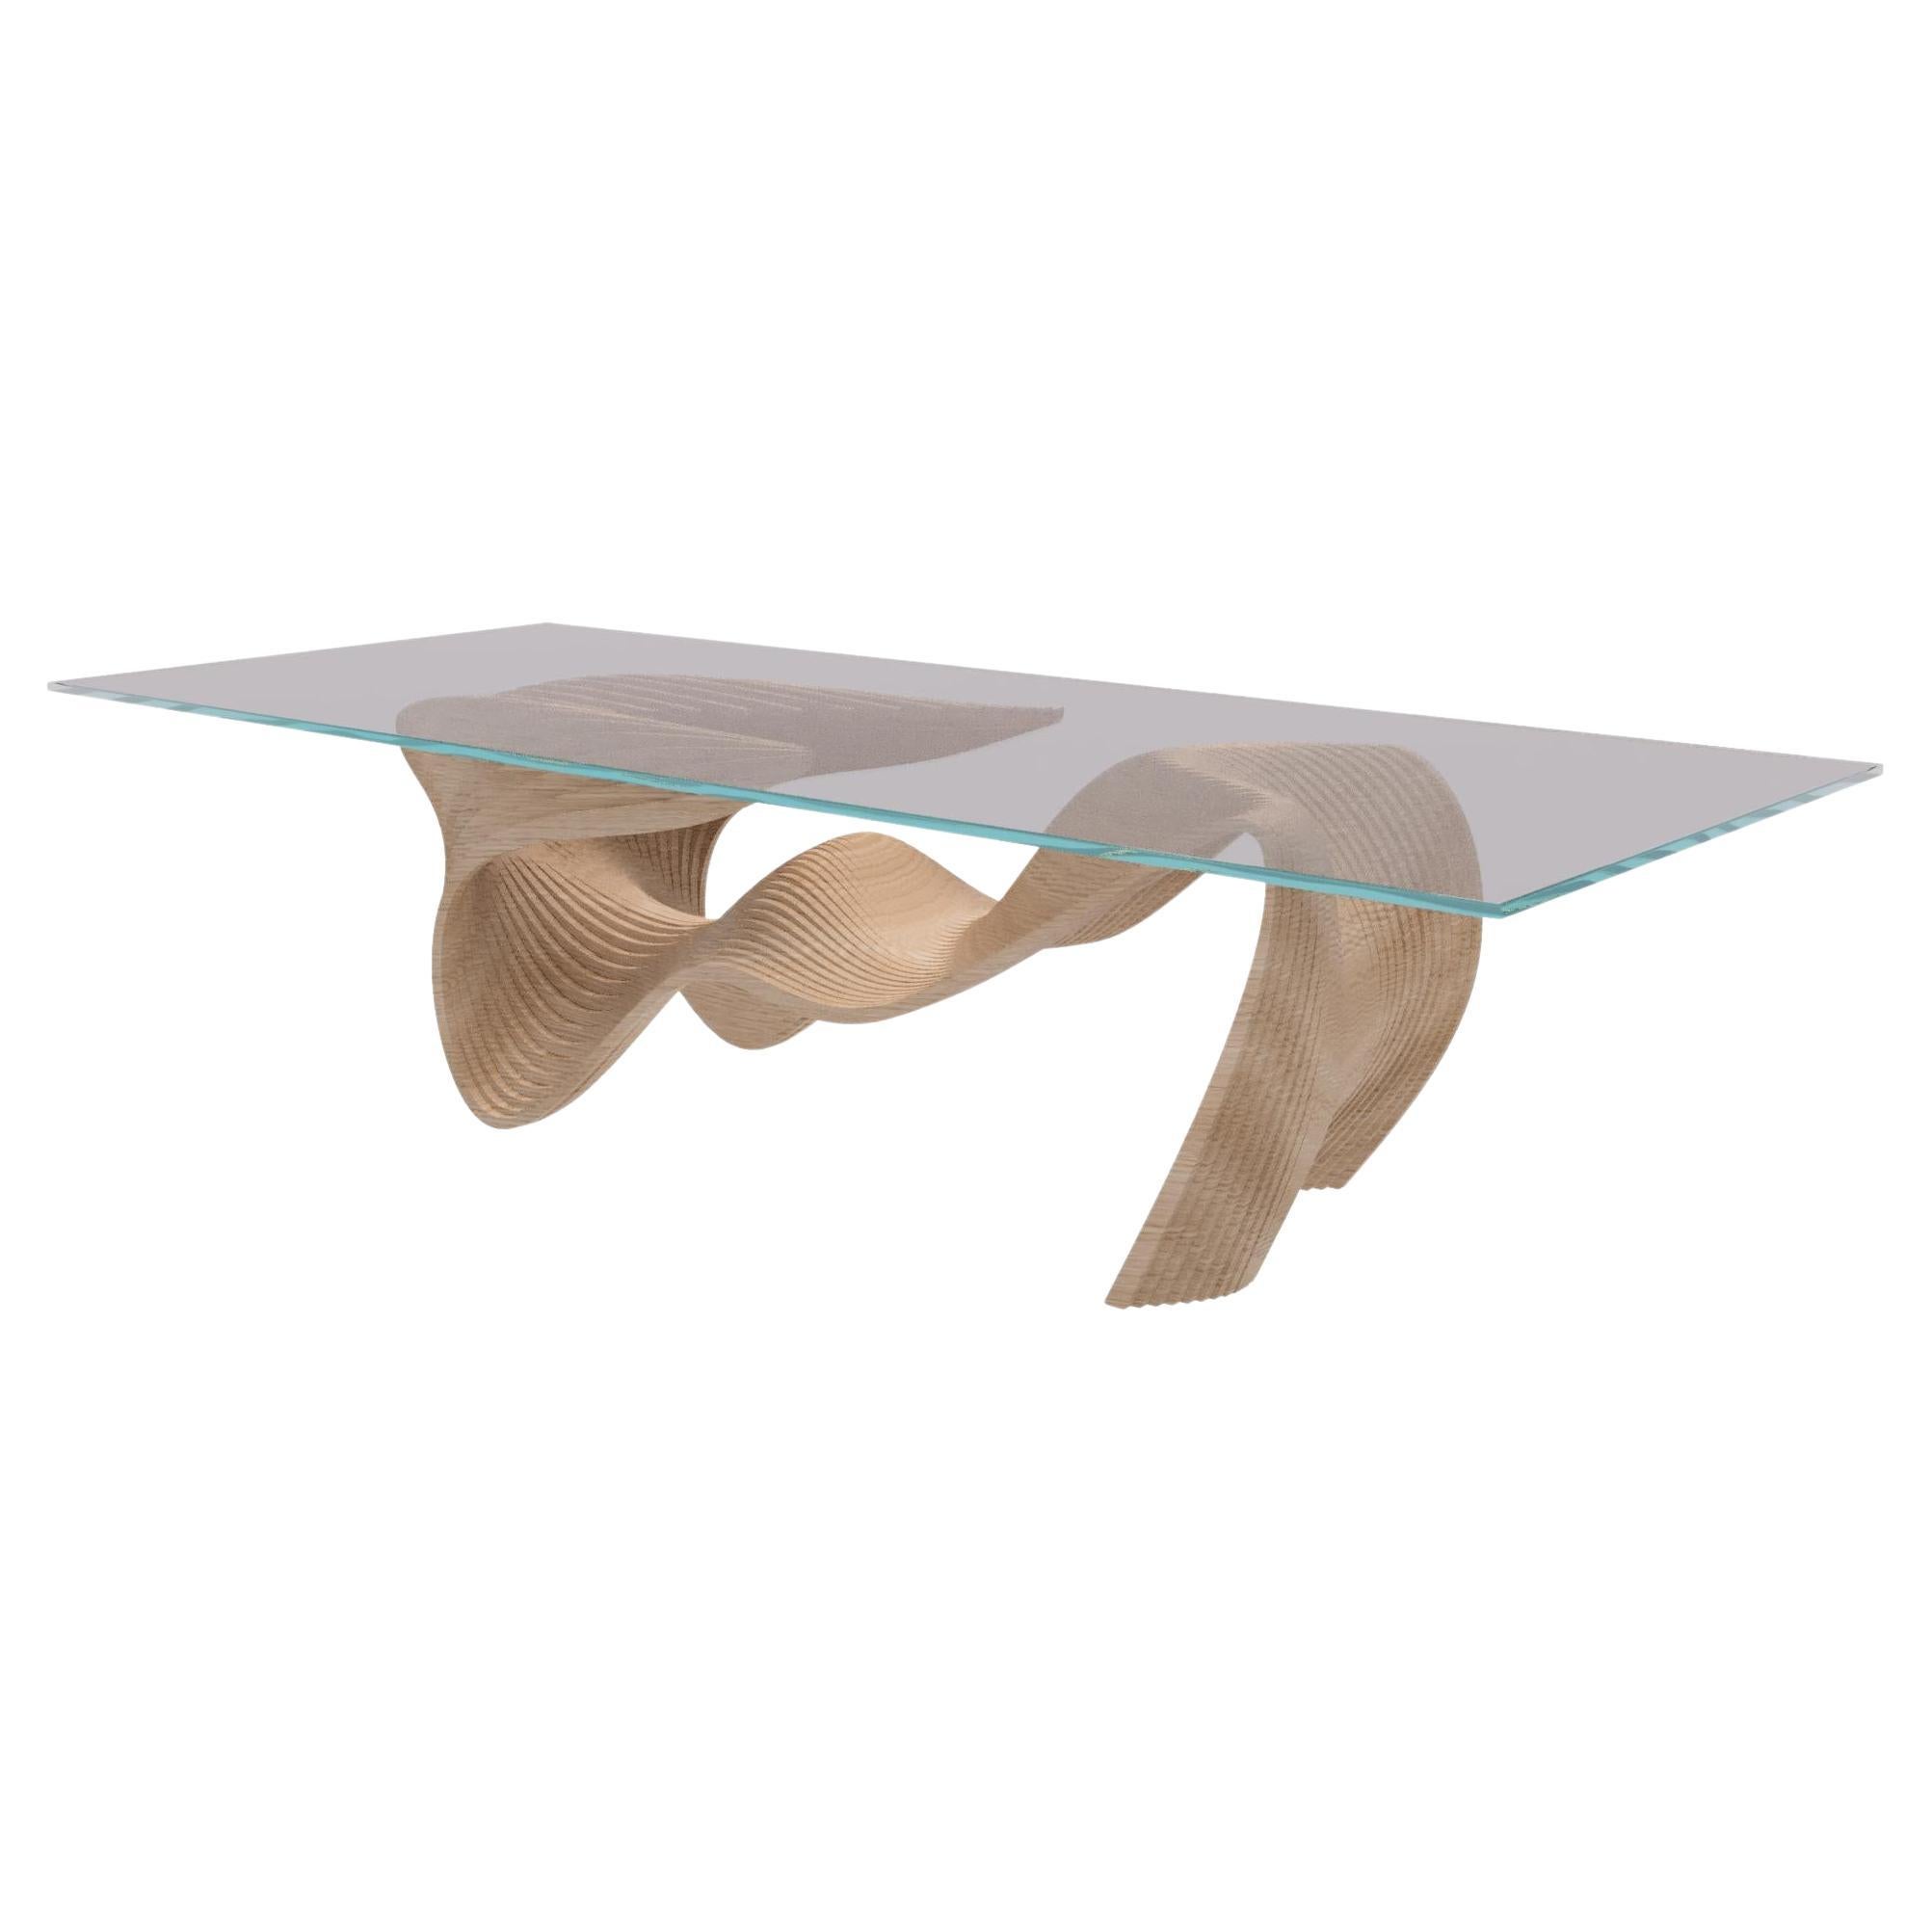 mesa de comedor (conejo) mesa hecha a mano, diseñada por Andro Herrera, una pieza única inspirada en el maravilloso (refinado) estilo del conejo.
Todas las piezas van montadas una a una, y el acabado es muy suave al tacto, tiene un cristal templado